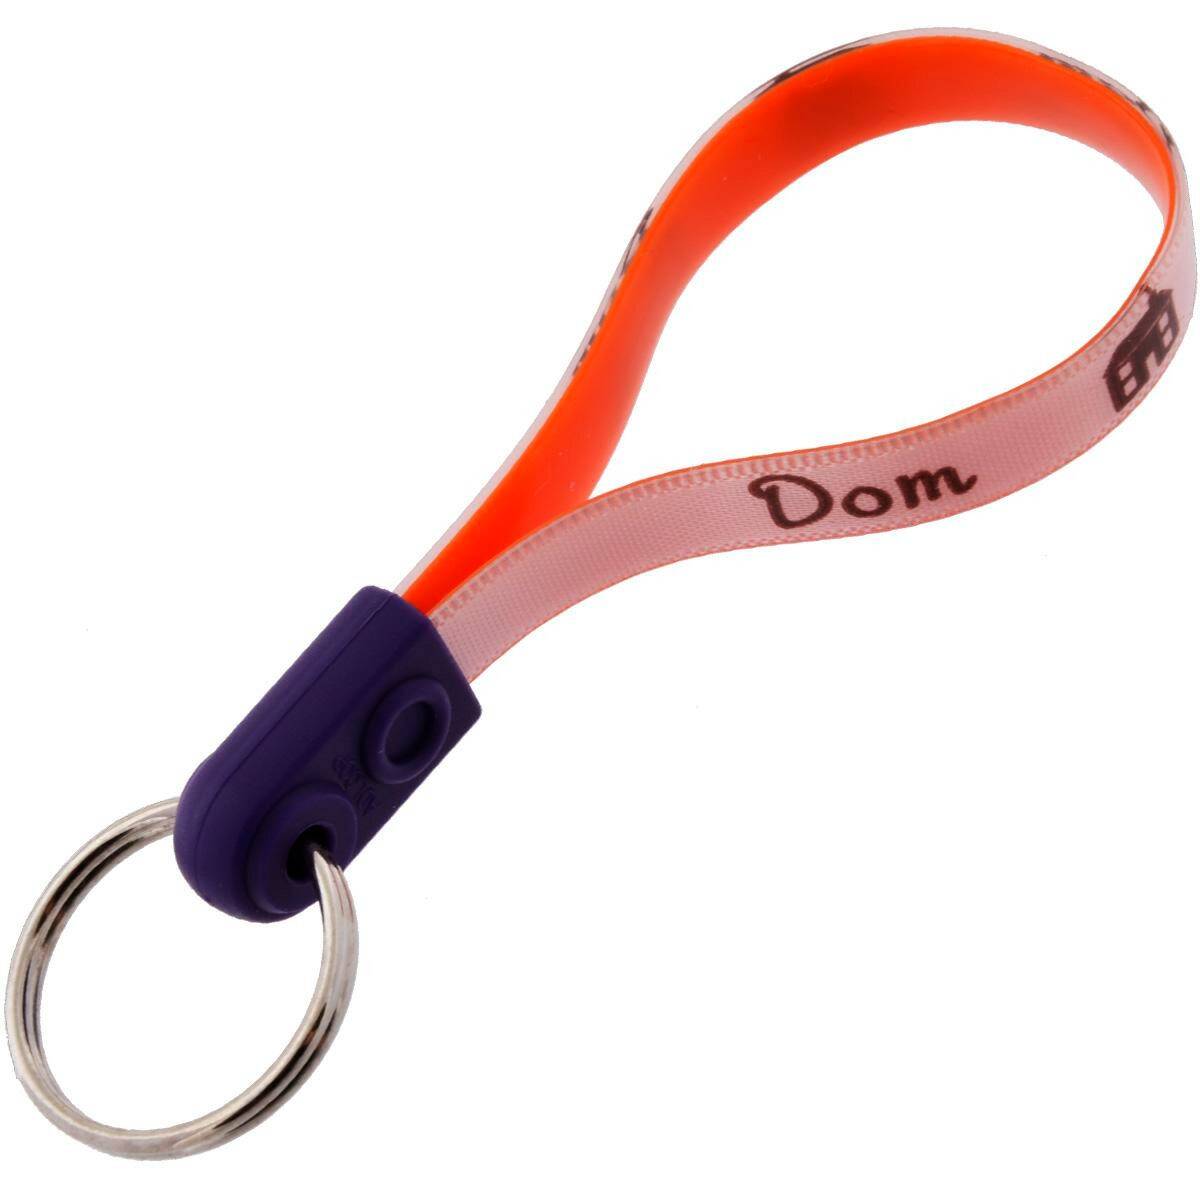 Belt keyring - DOM